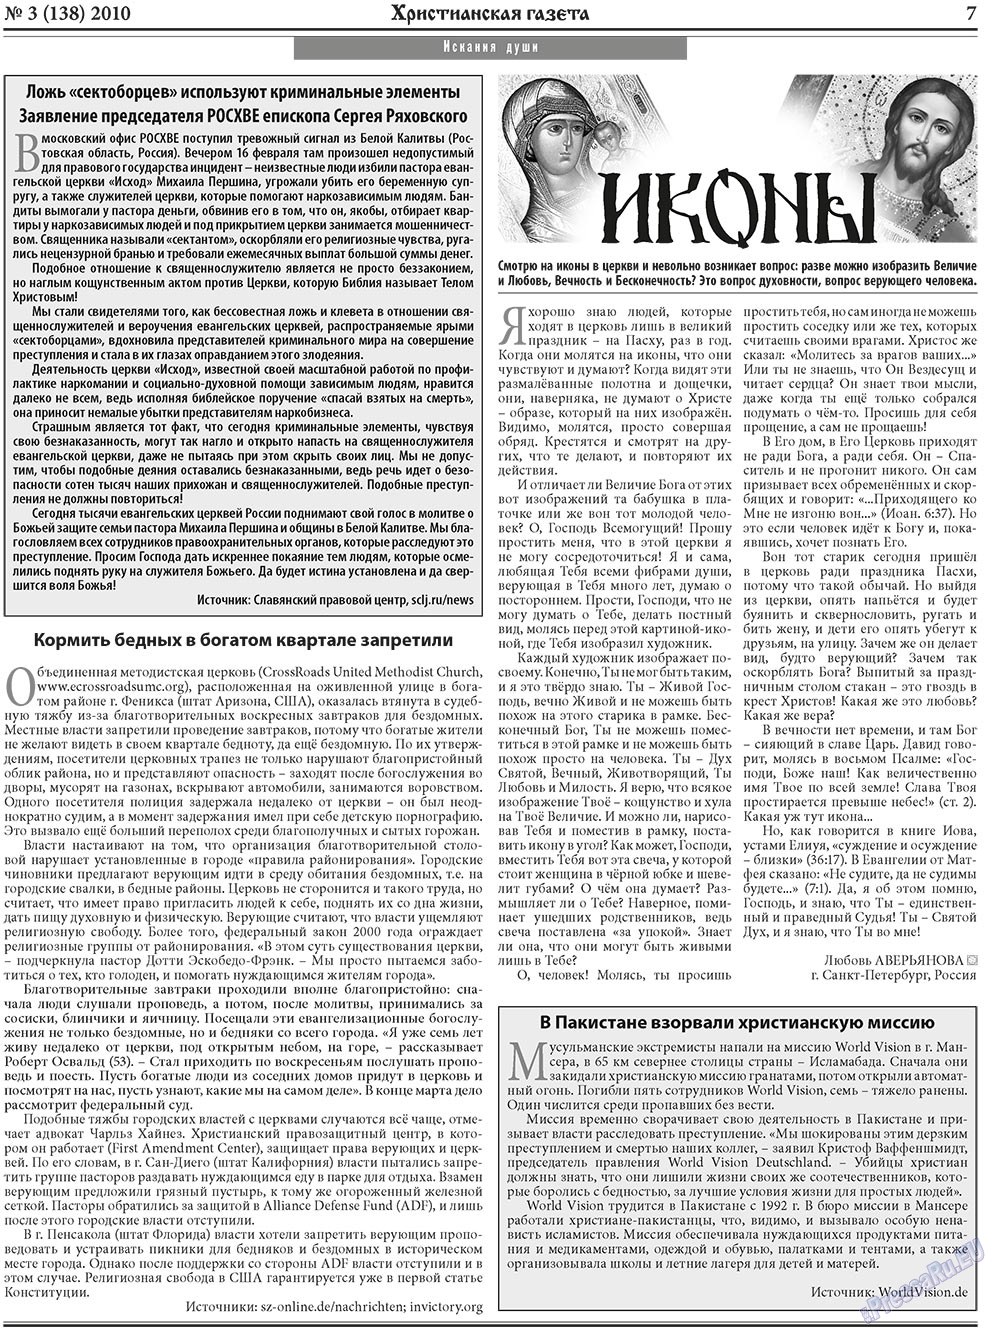 Христианская газета, газета. 2010 №3 стр.7